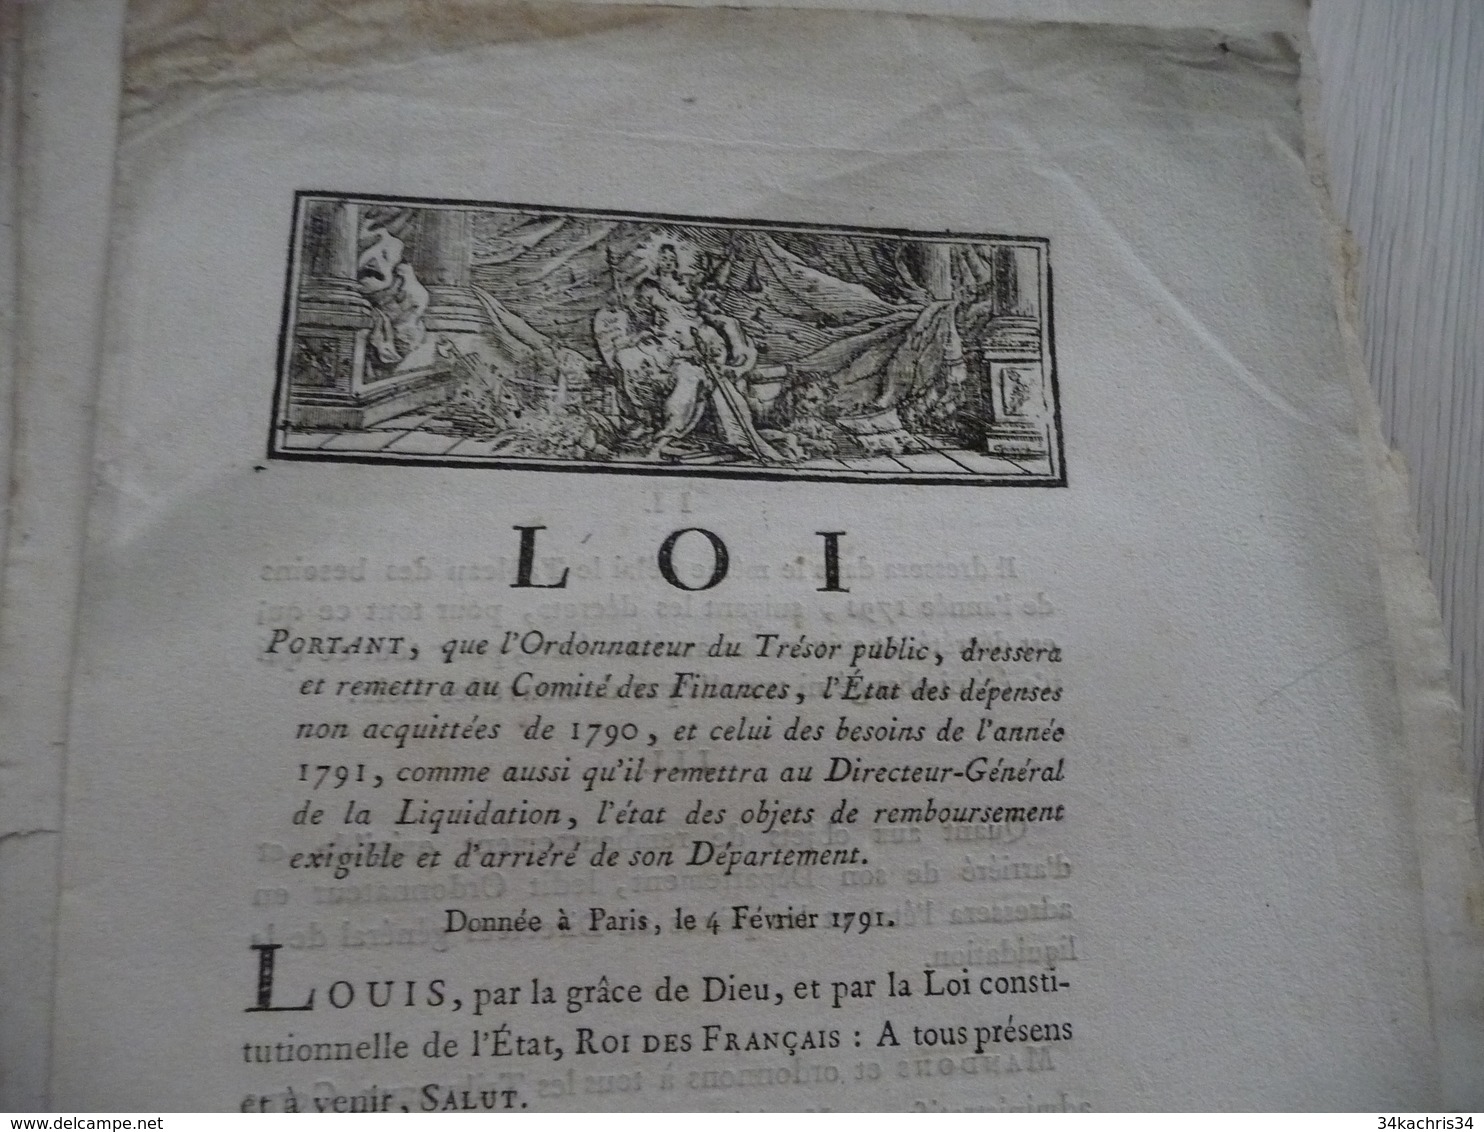 Loi Révolution 04/02/1791 Remise état Ds Finances Et Dépenses De 1791 - Gesetze & Erlasse